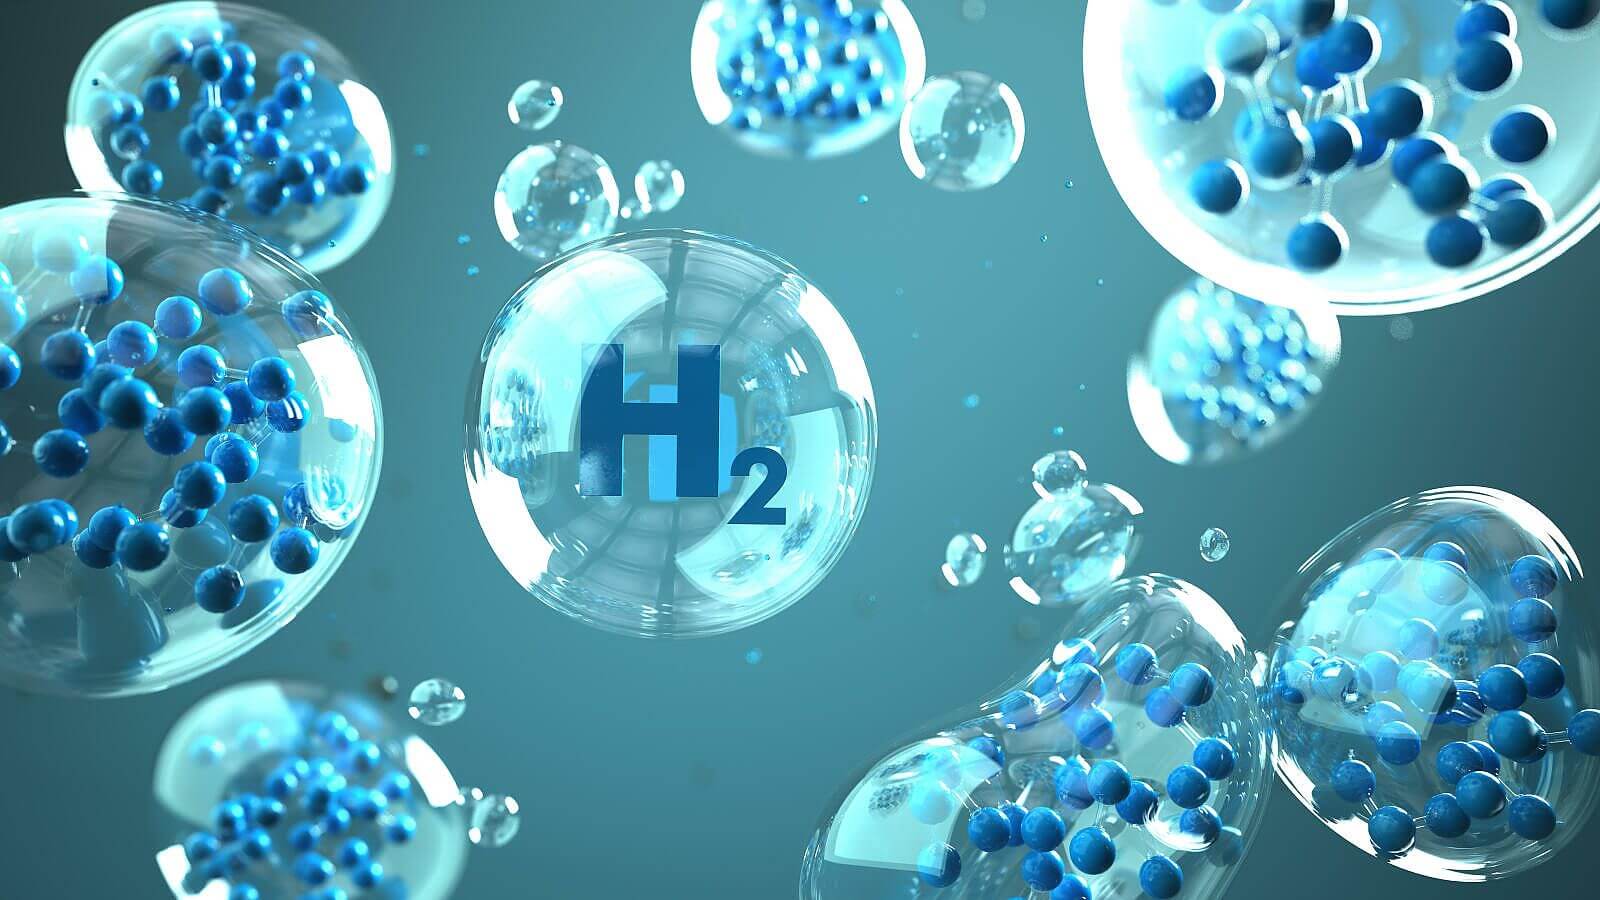 Wasserstoff. Copyright: Picture Alliance